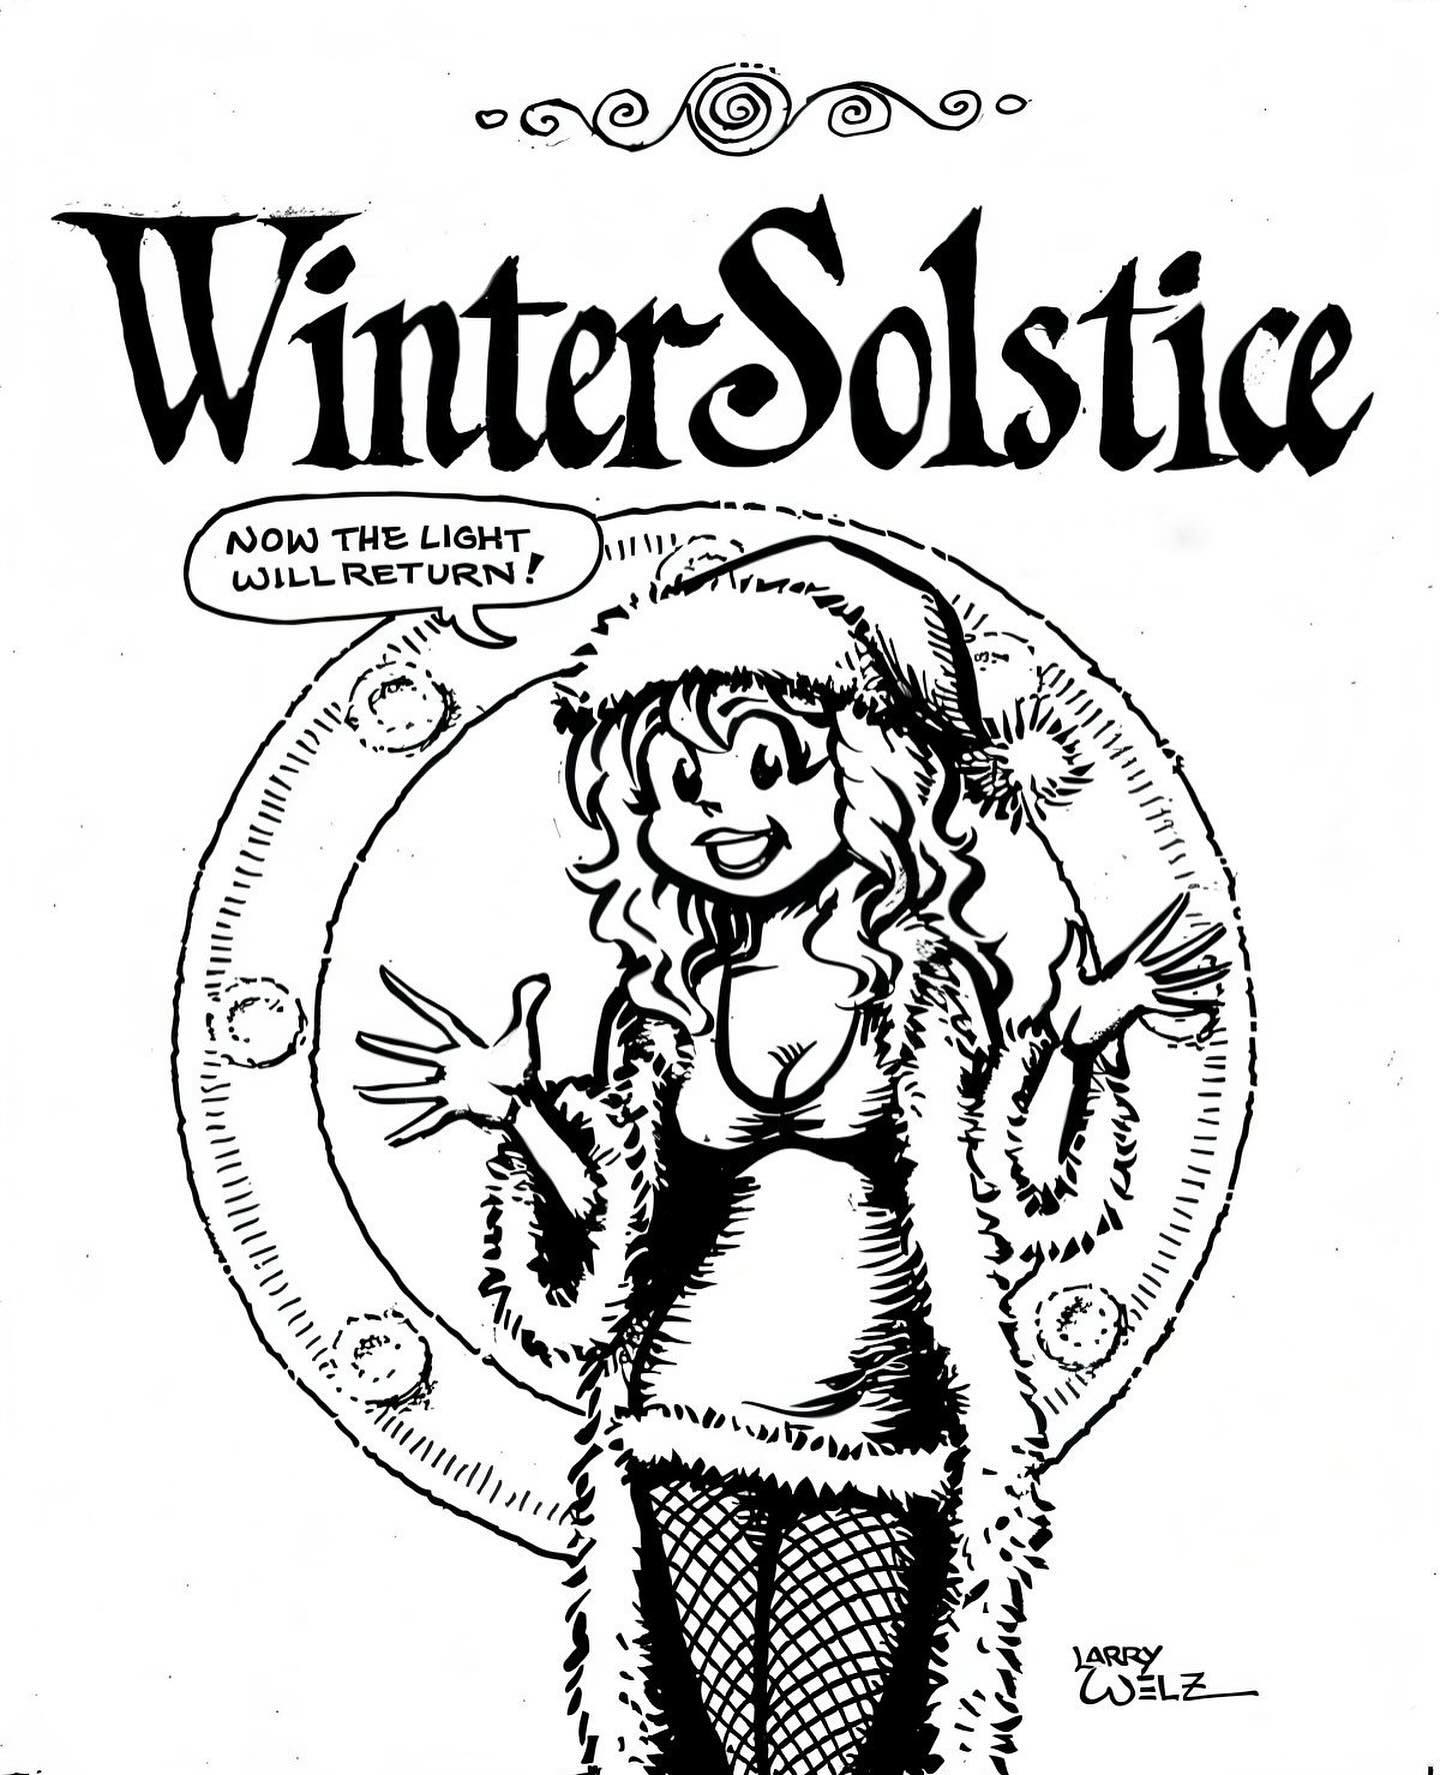 Winter Solstice, Larry Welz